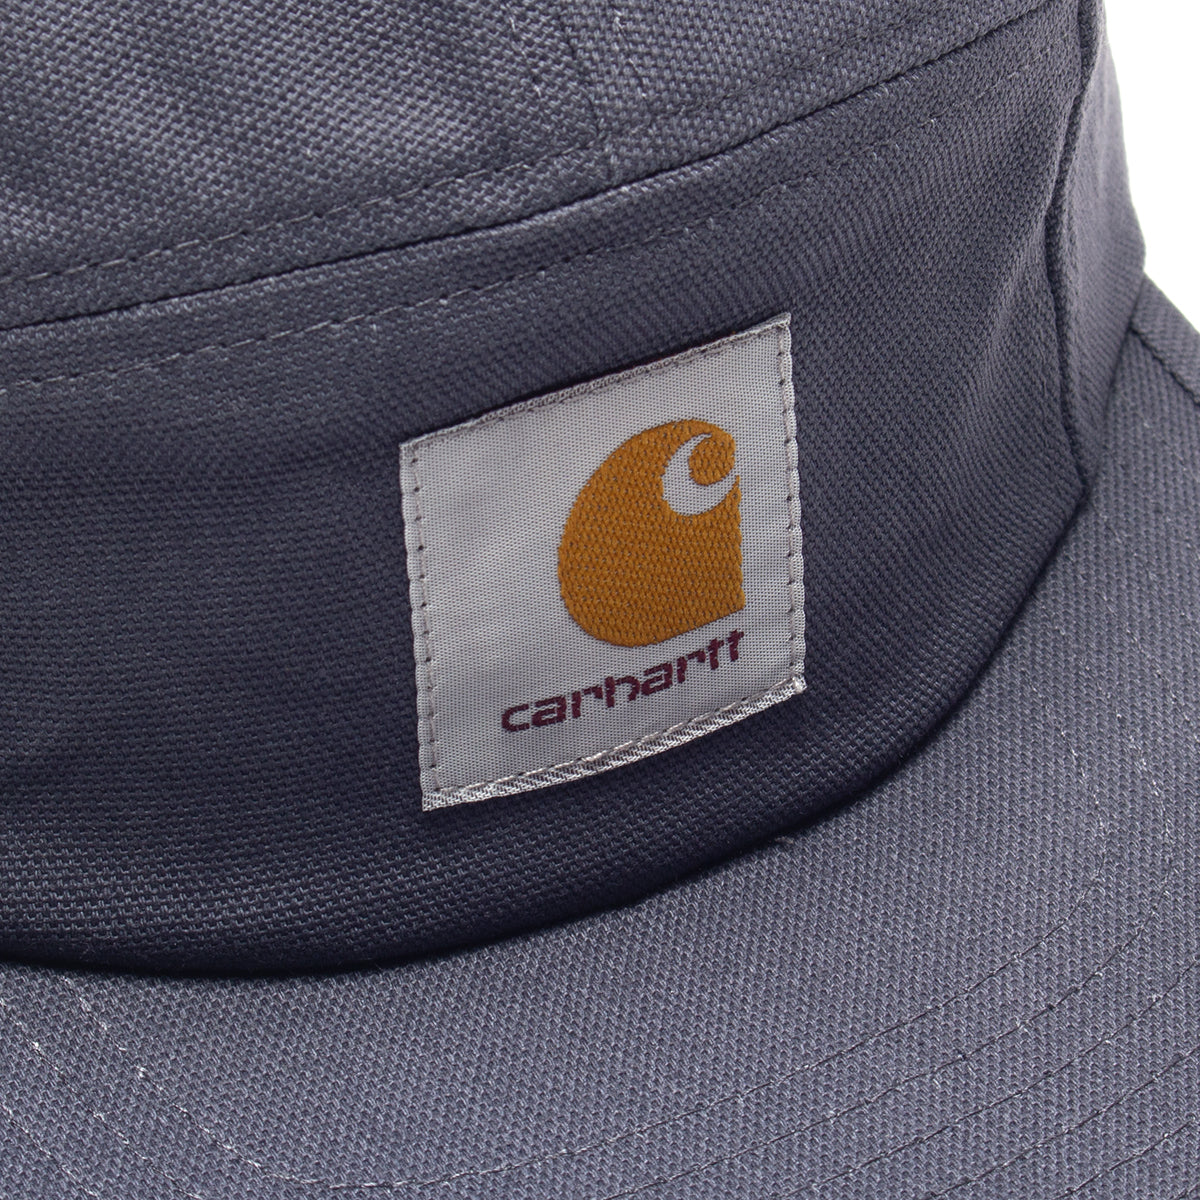 CARHARTT Carhartt BACKLEY - Casquette Homme bleu - Private Sport Shop